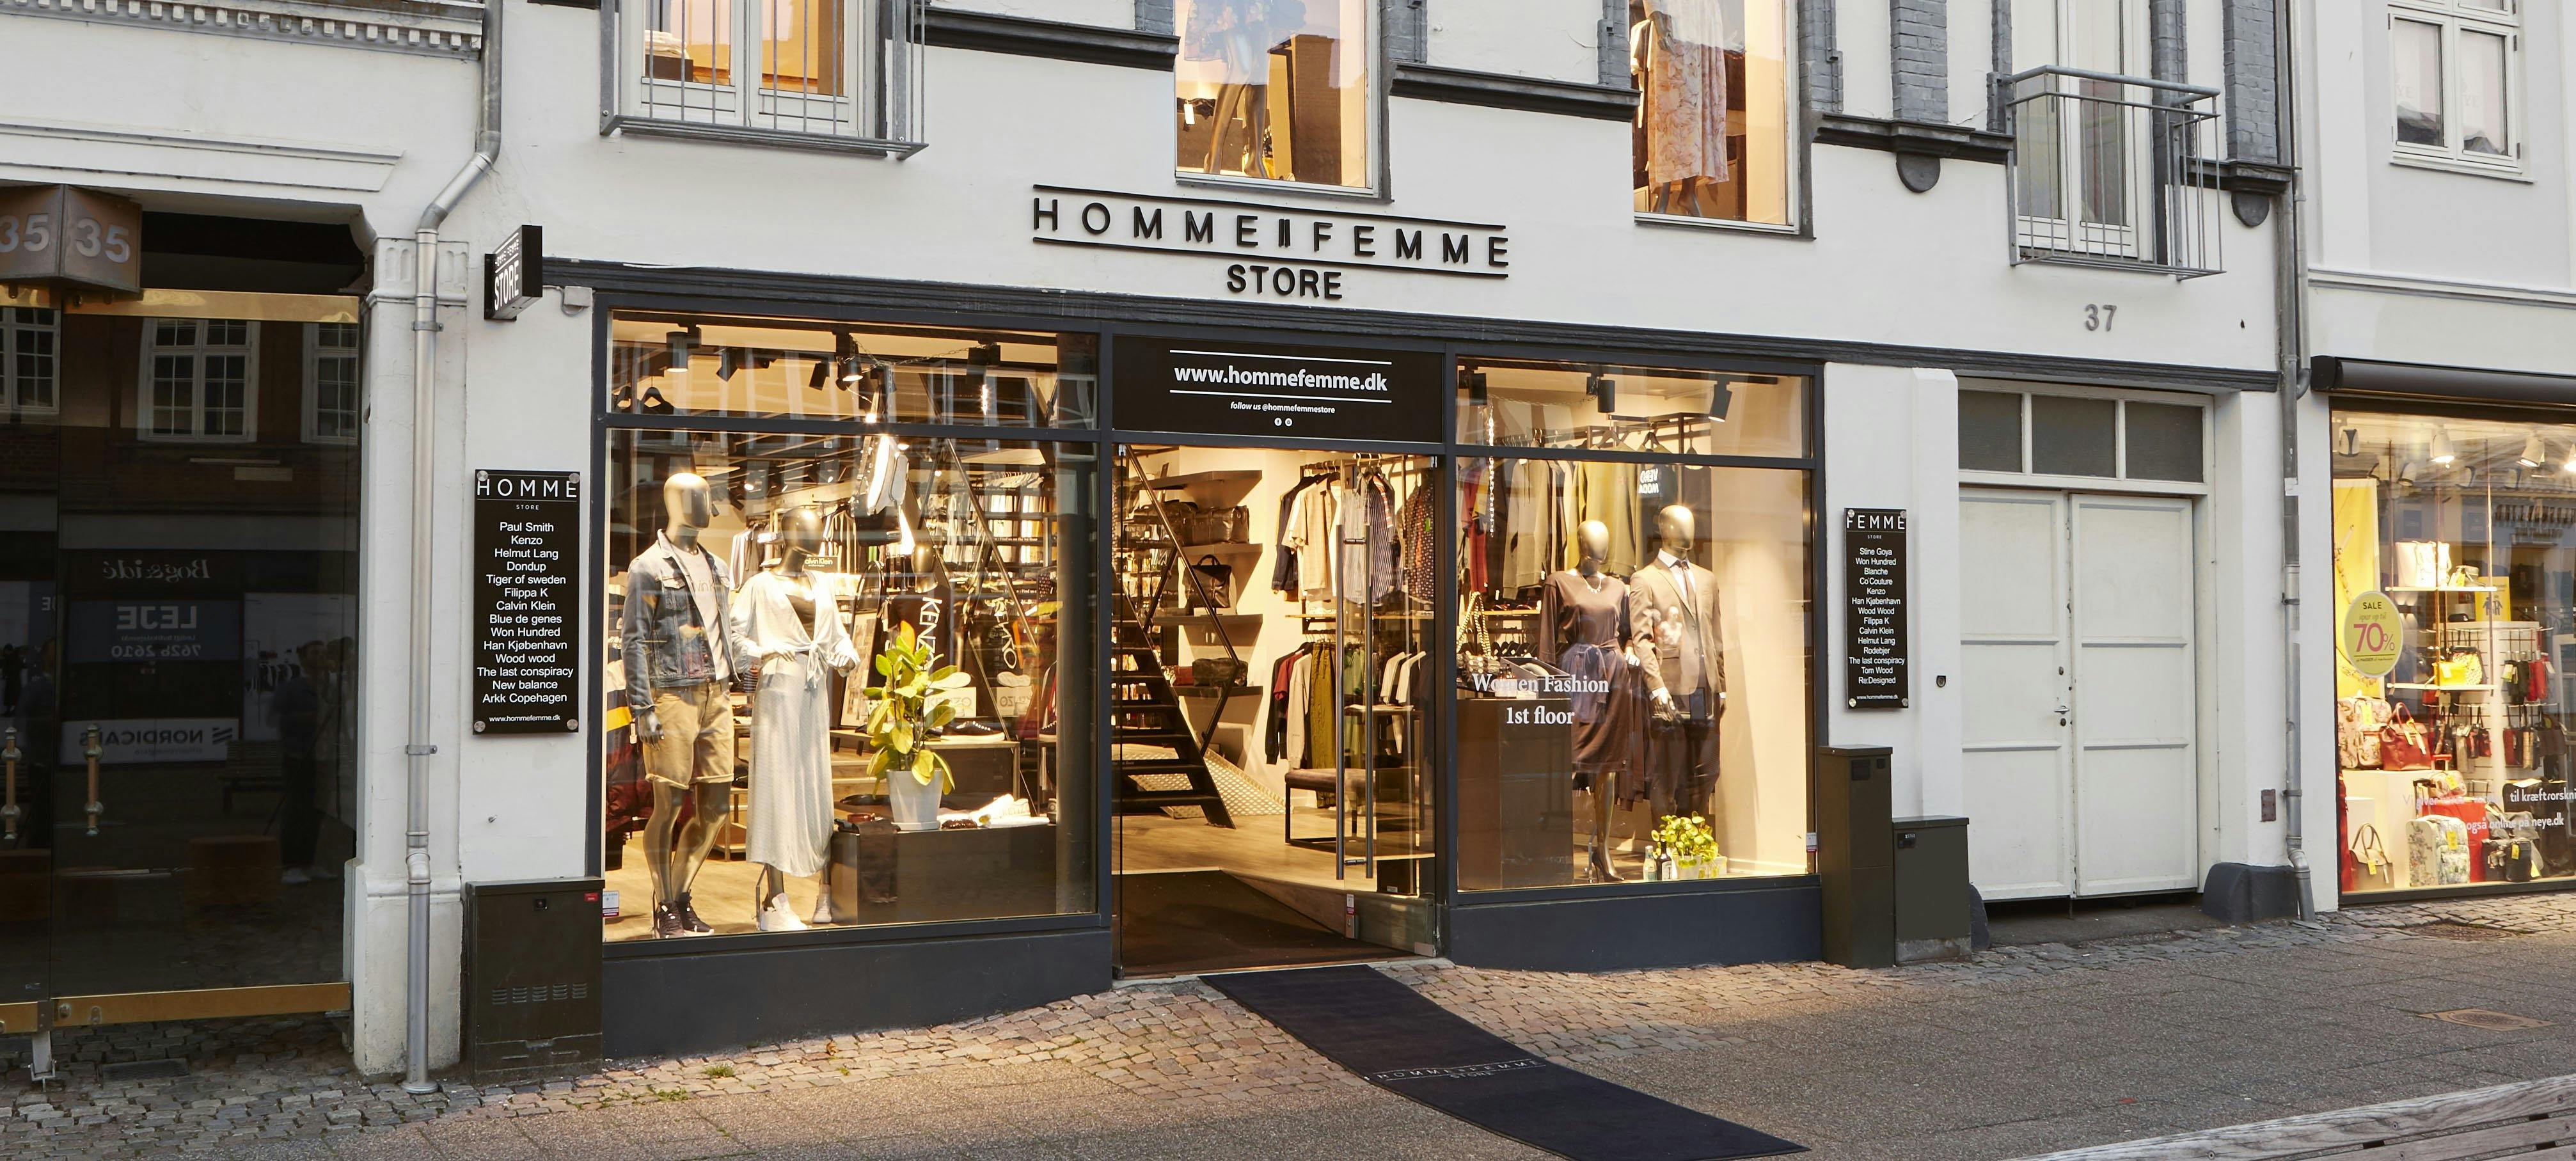 absolutte hotteste tøjbutik i Horsens sælges - Virksomhedsbørs